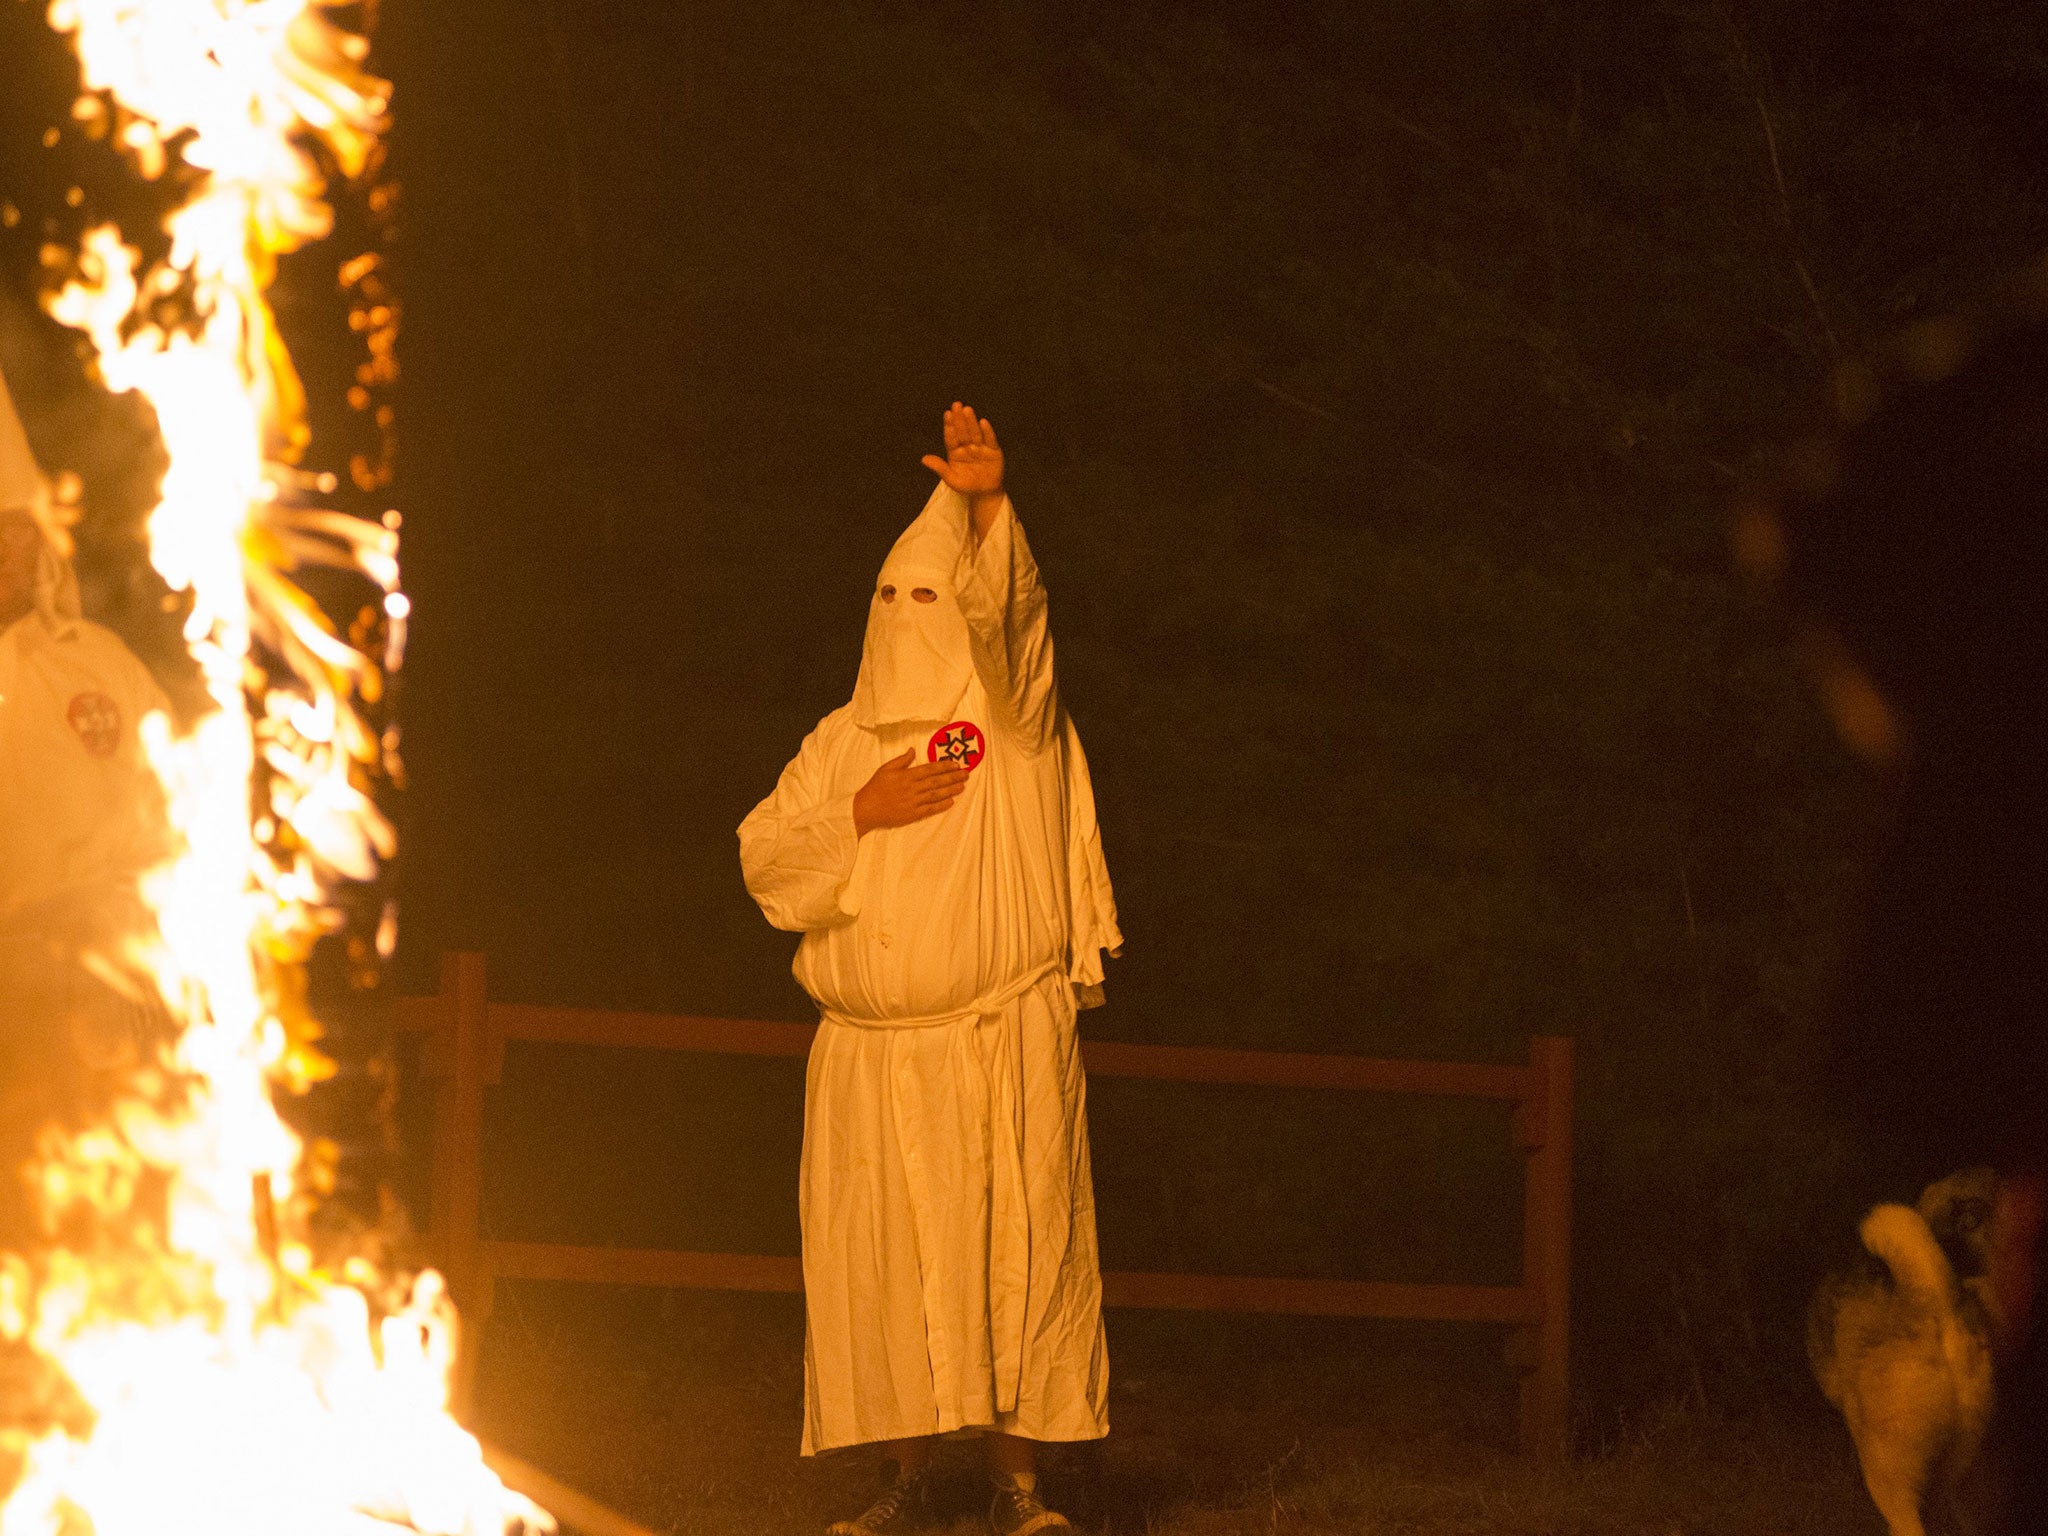 A KKK member burns a cross in July last year